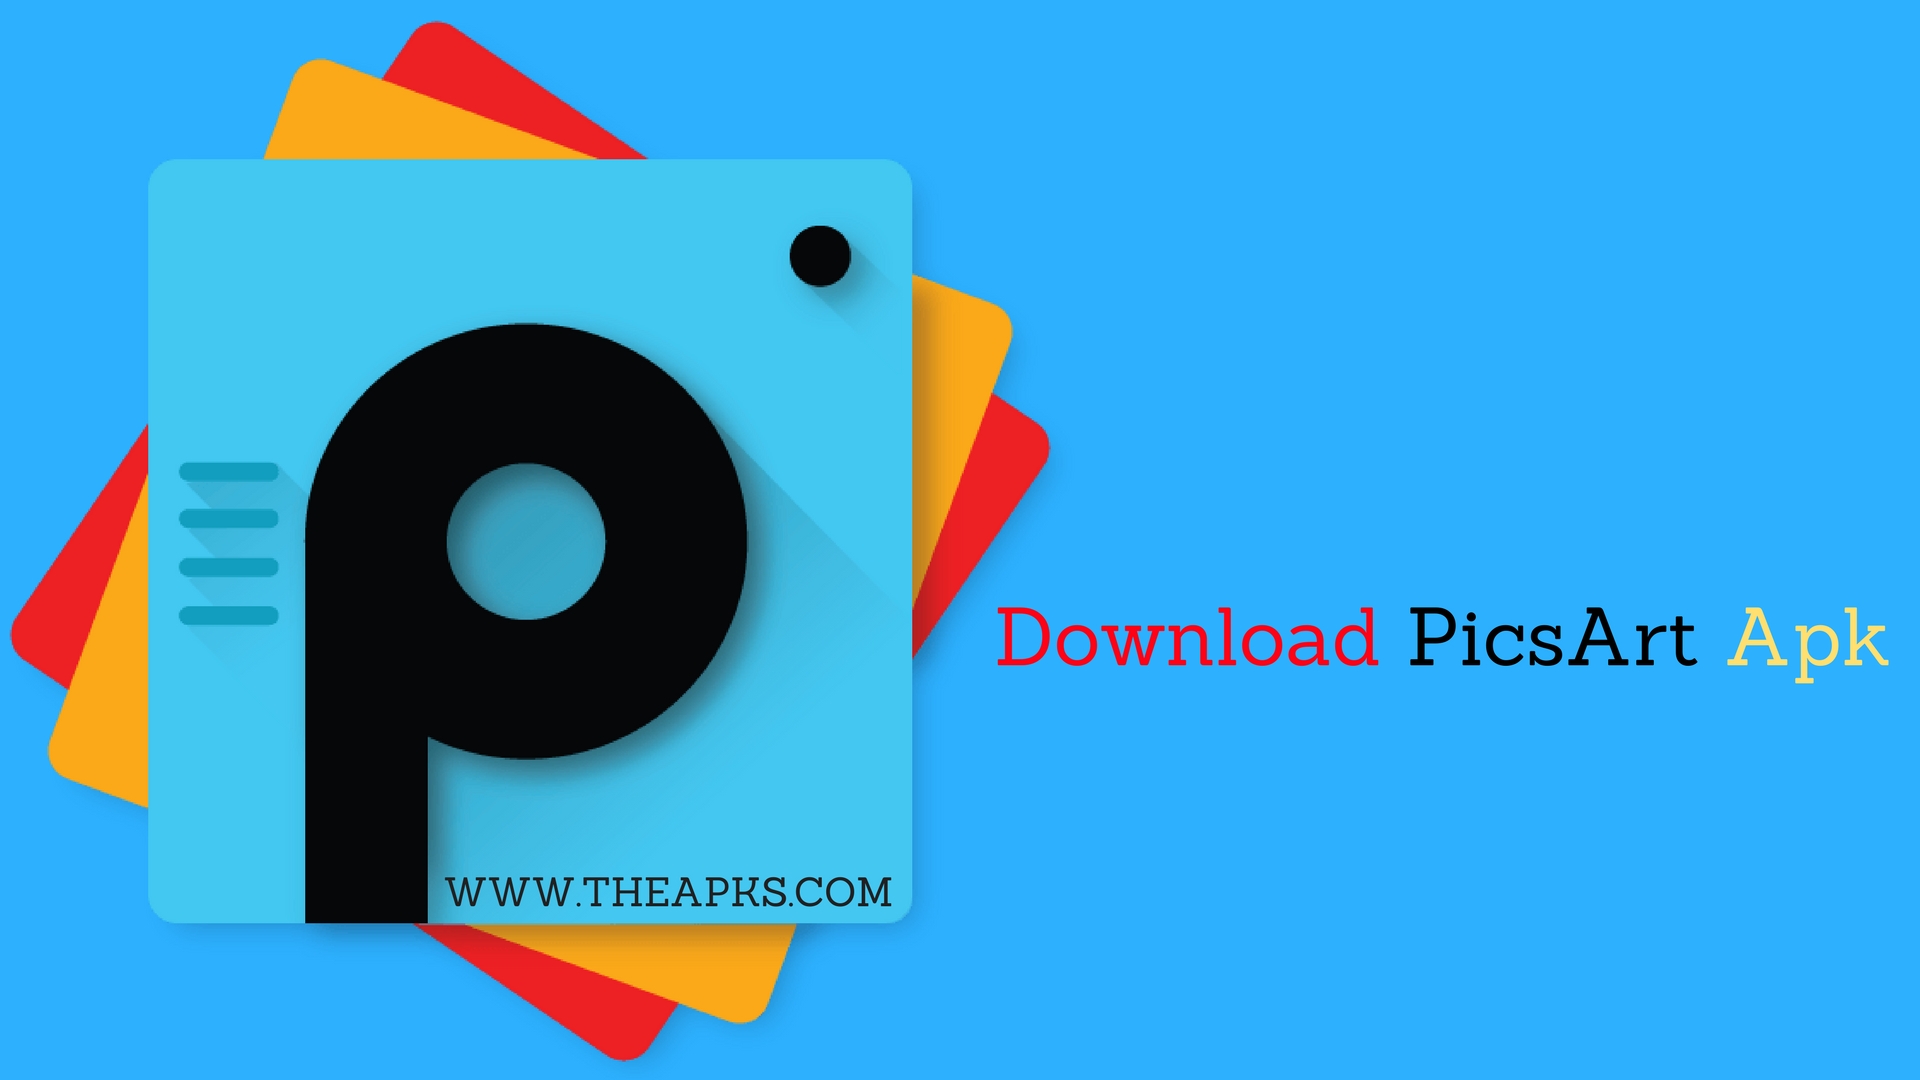 Picsart App Download Free